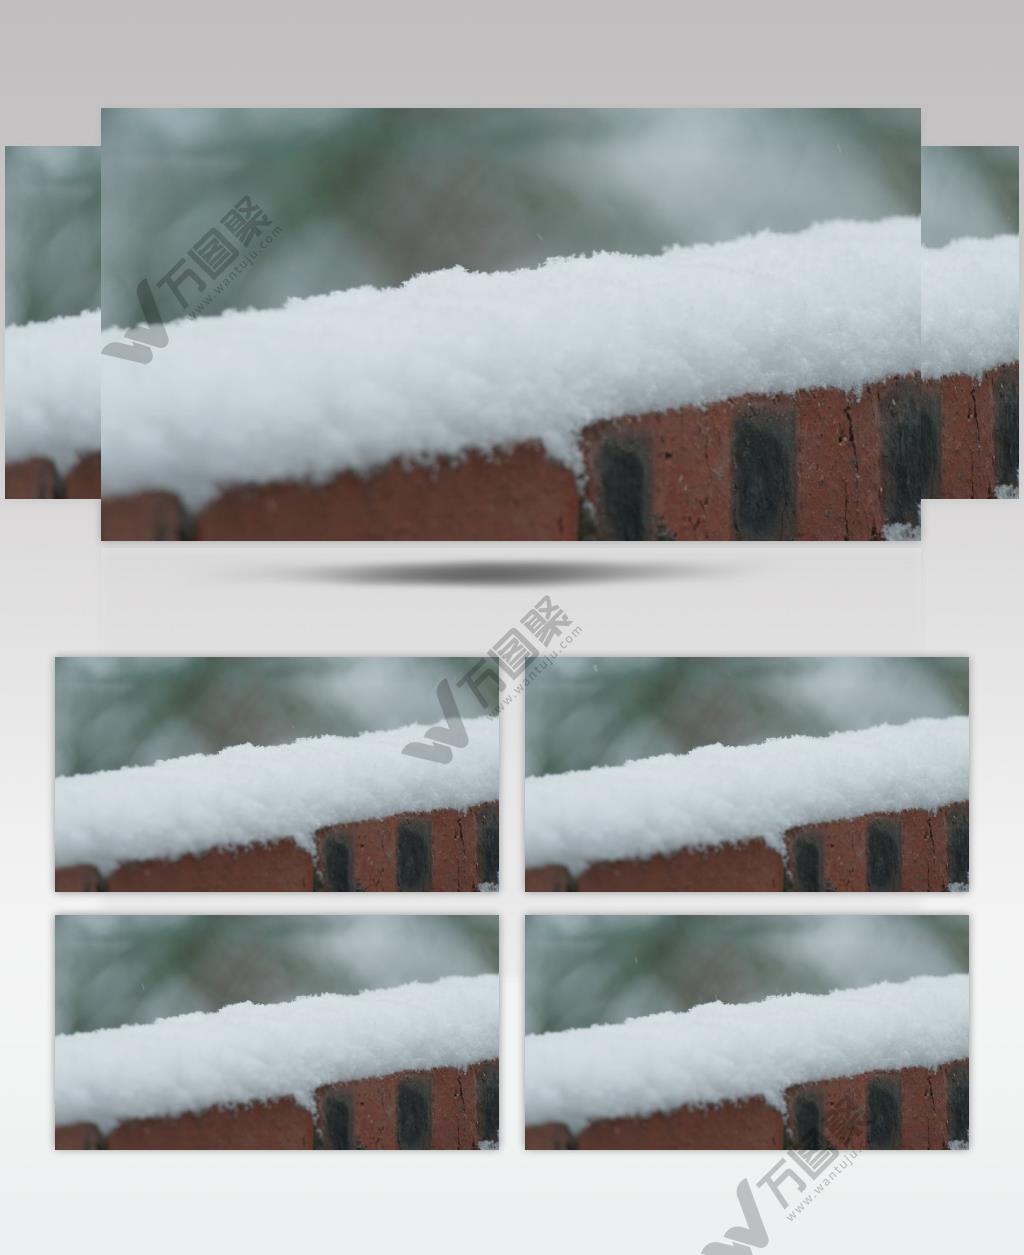 冬天冬季下雪农村围墙积雪